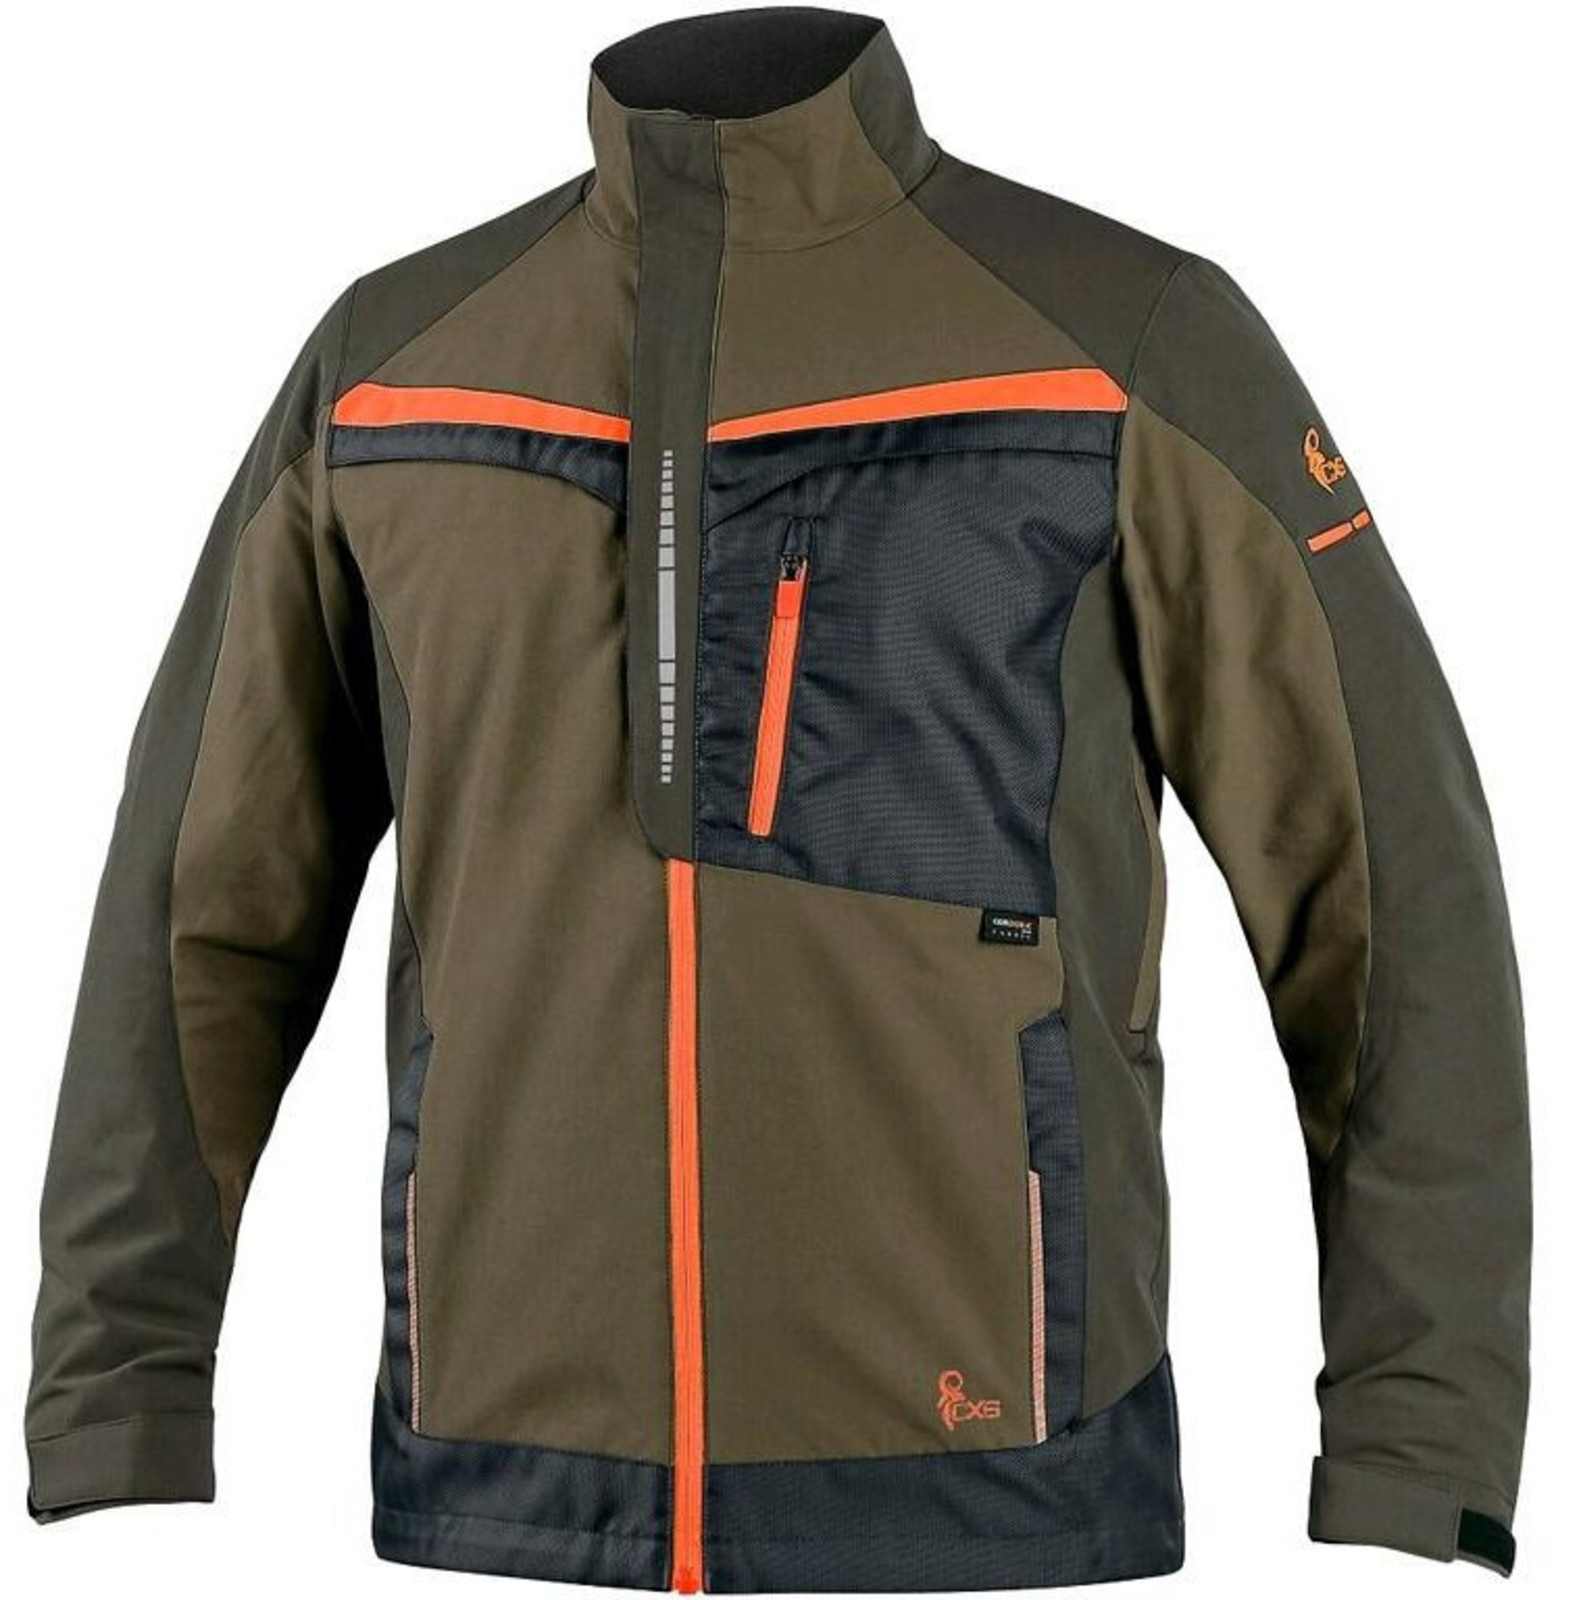 Strečová montérková bunda CXS Naos s reflexnými doplnkami - veľkosť: 60, farba: khaki/oranžová